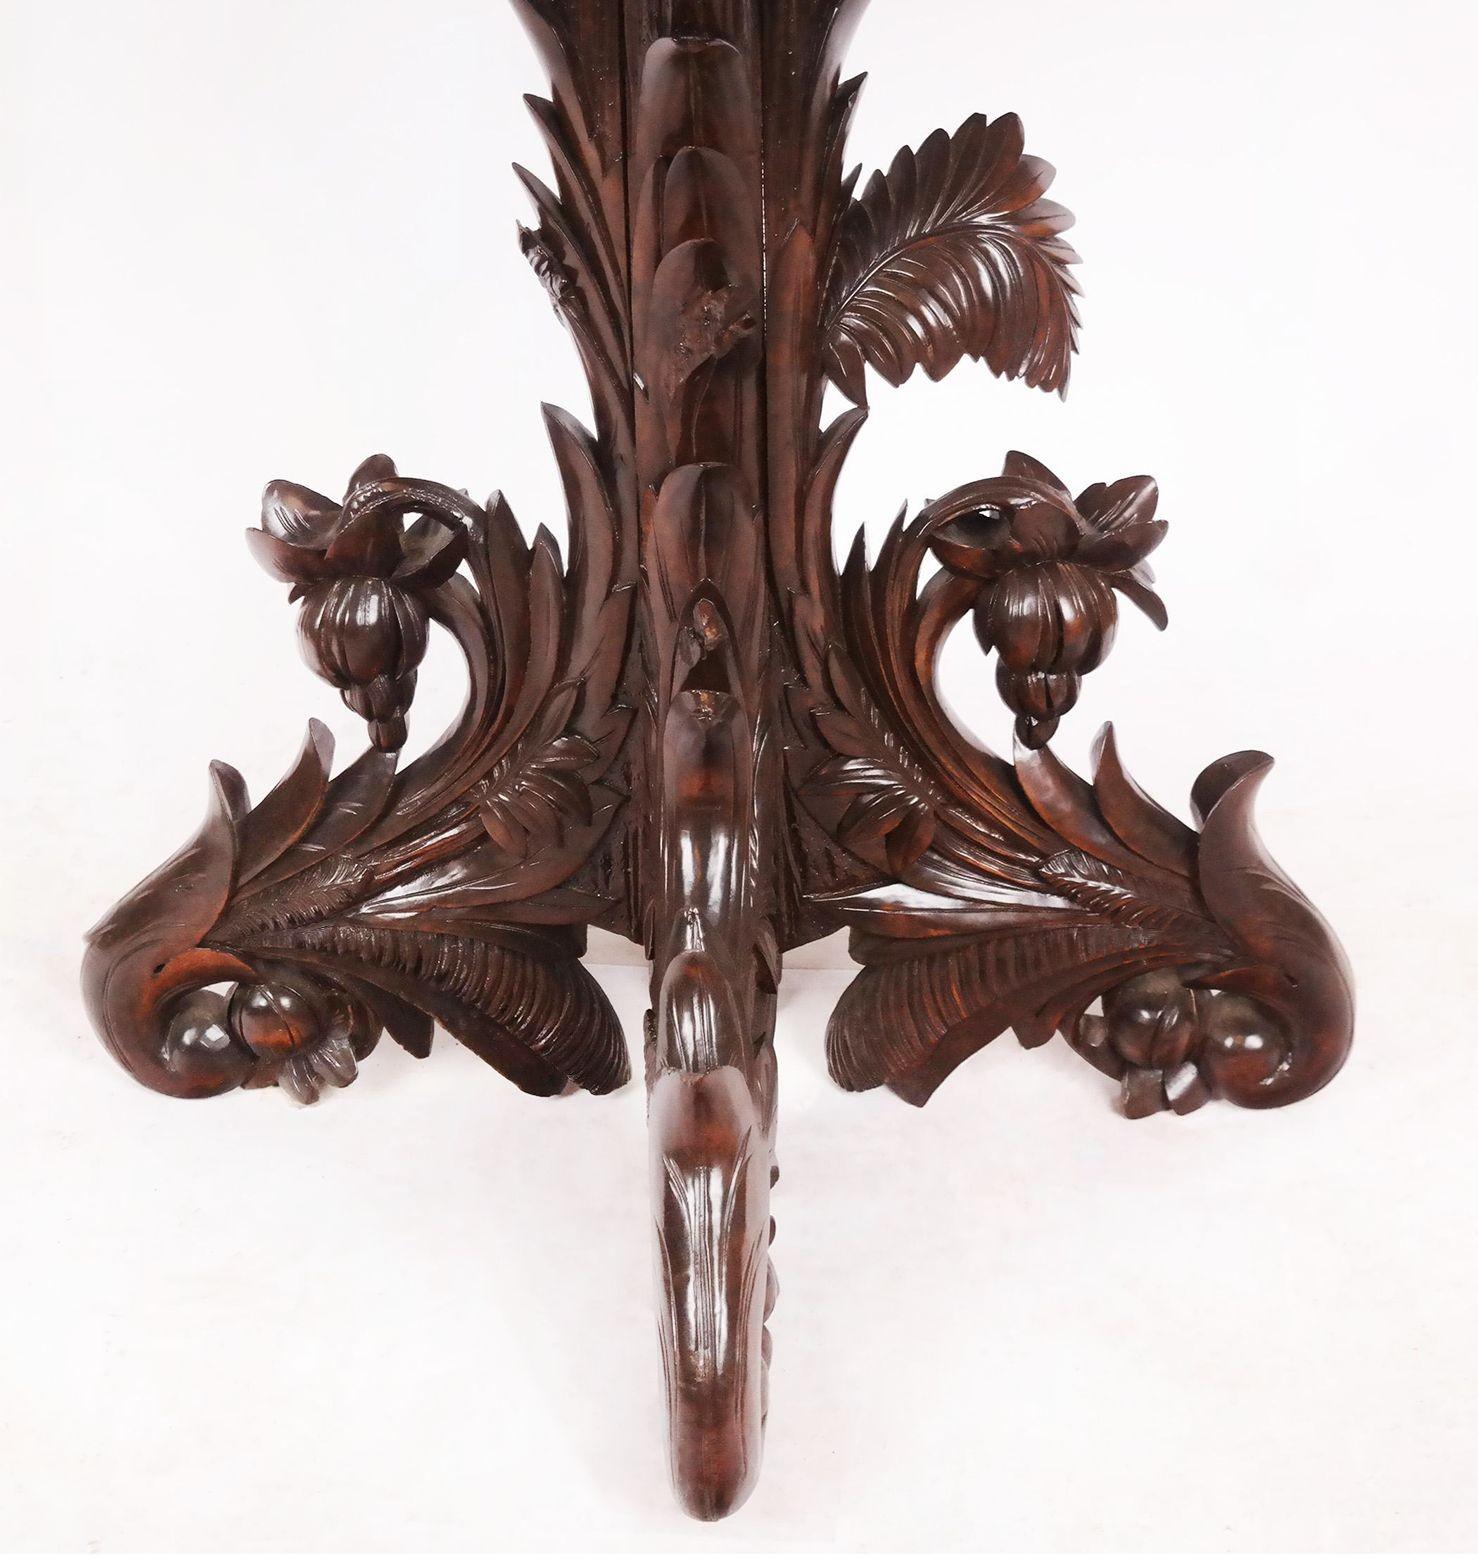 Table centrale ancienne en noyer sculpté, France, 19ème siècle. La pièce est ornée de détails floraux et botaniques sculptés sur tout son pourtour.
Dimensions :
29 